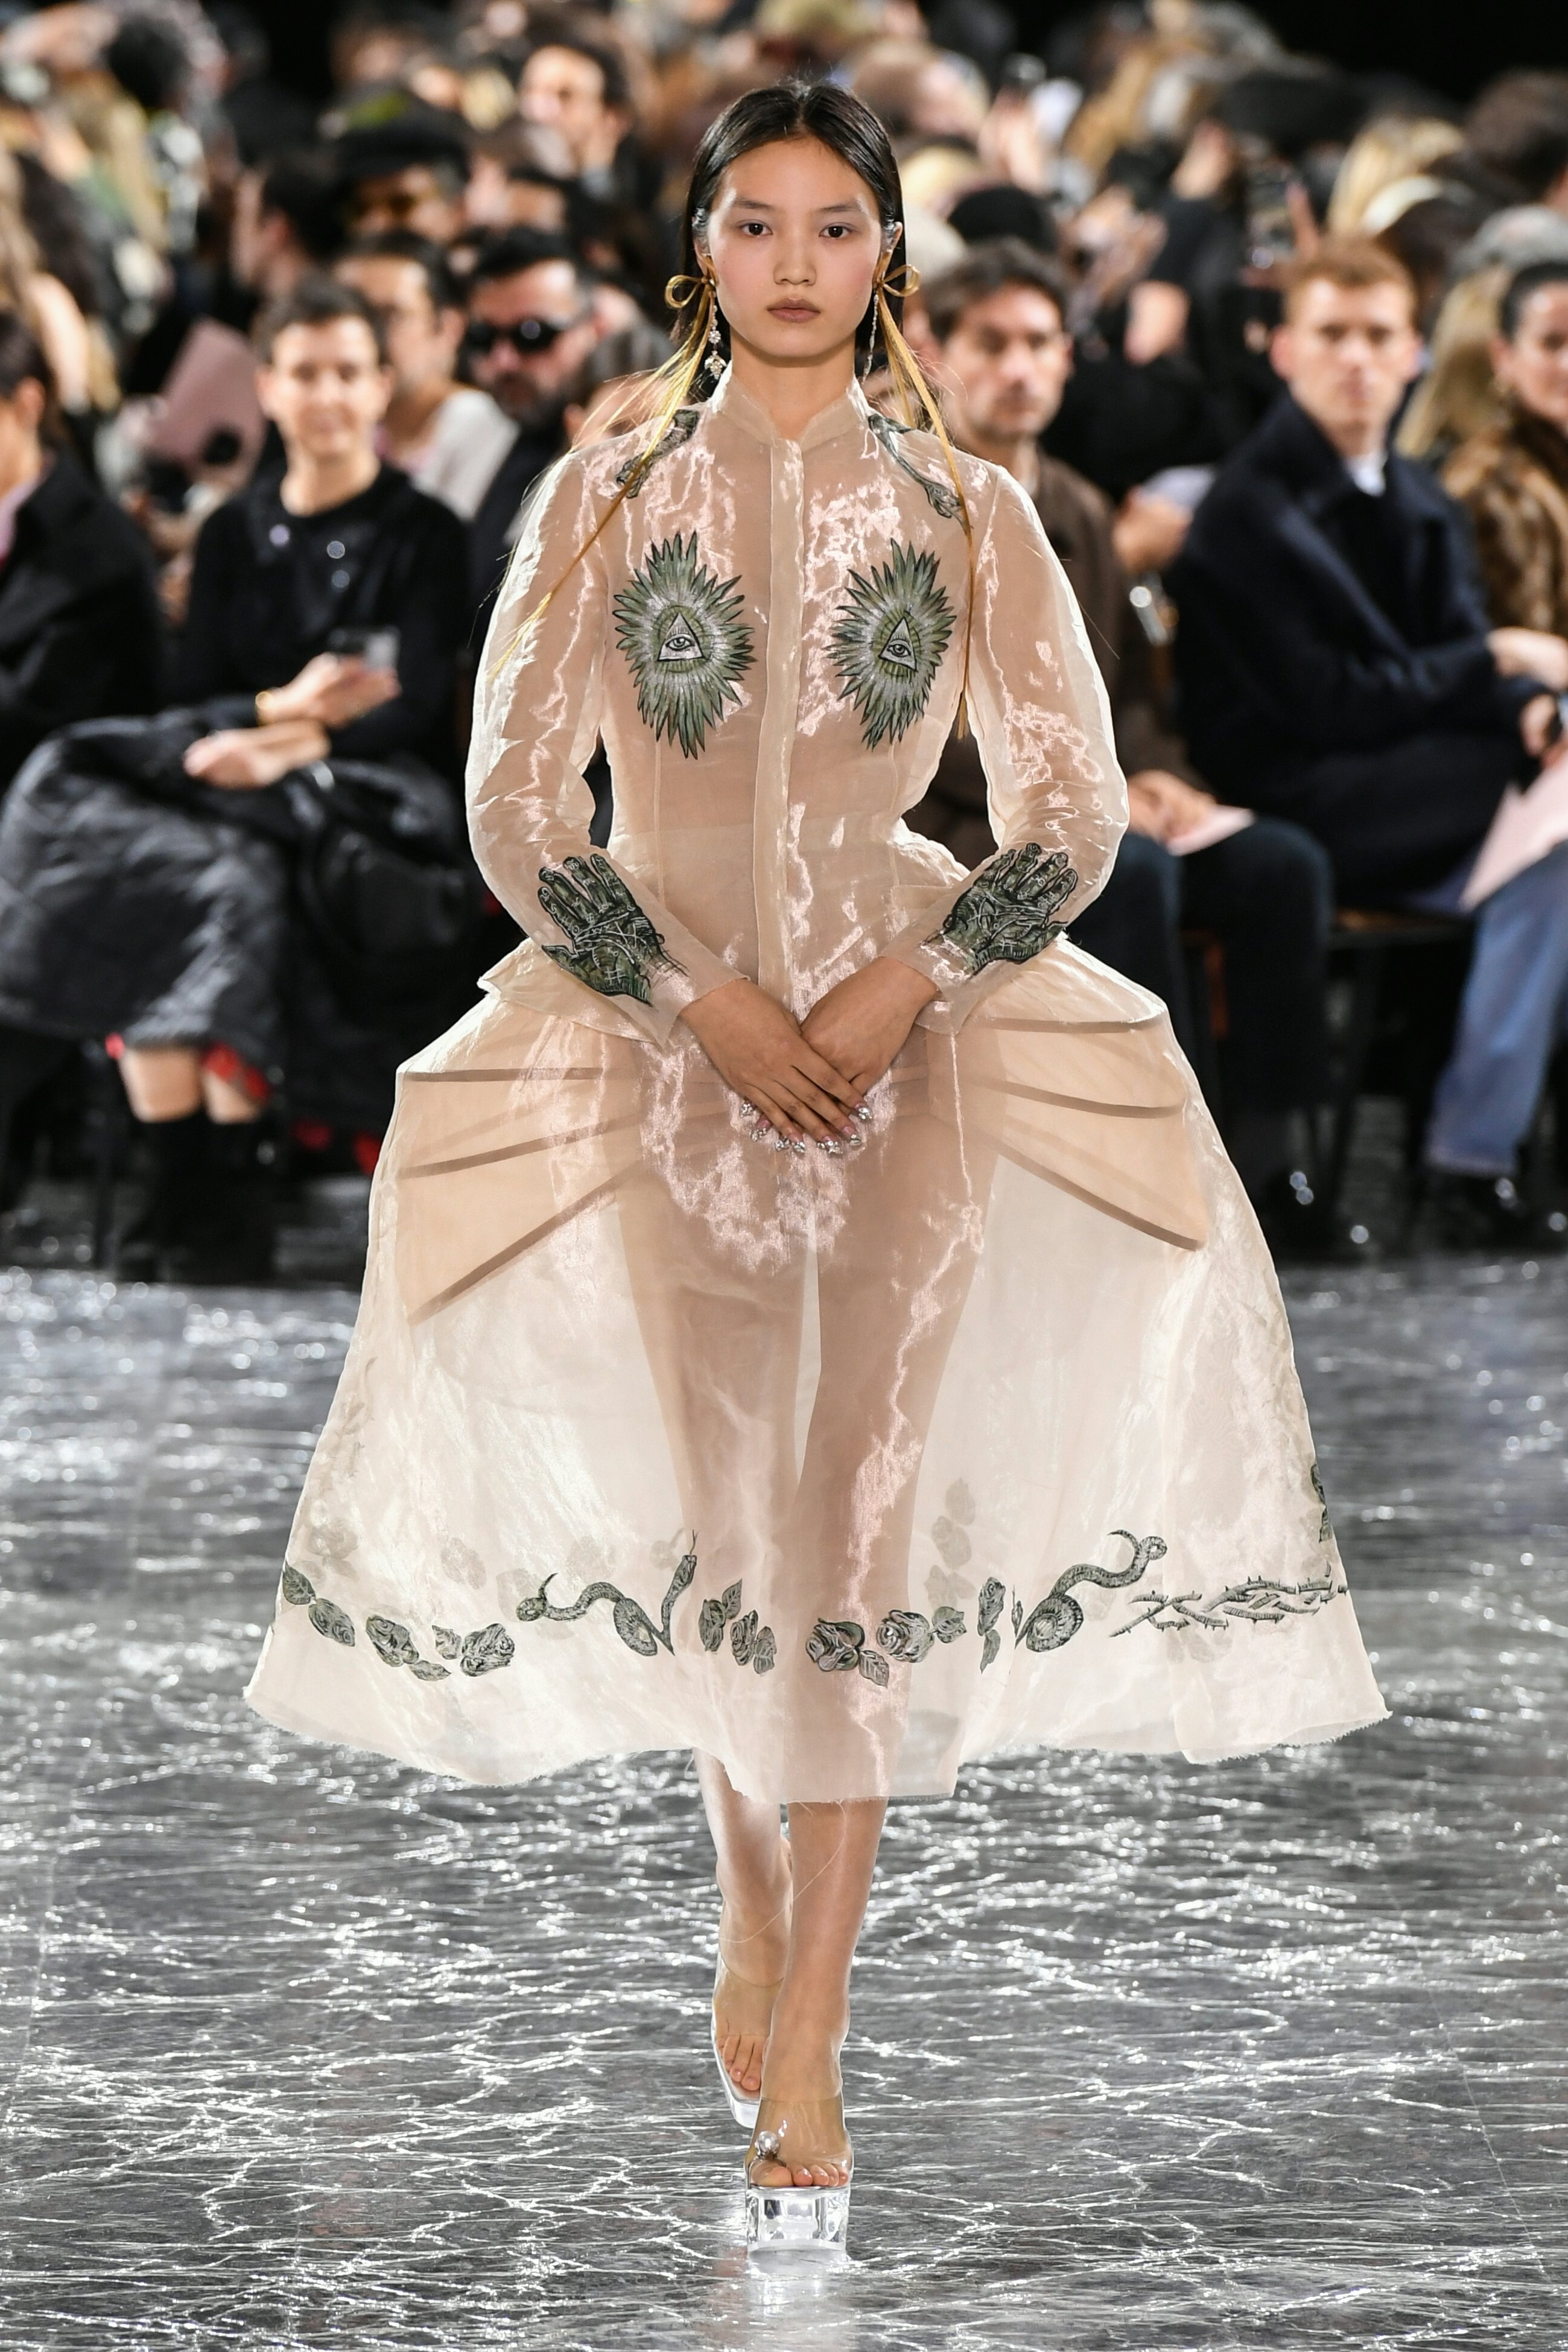 Jean Paul Gaultier's Paris Couture Show Was a Simone Rocha Celebration